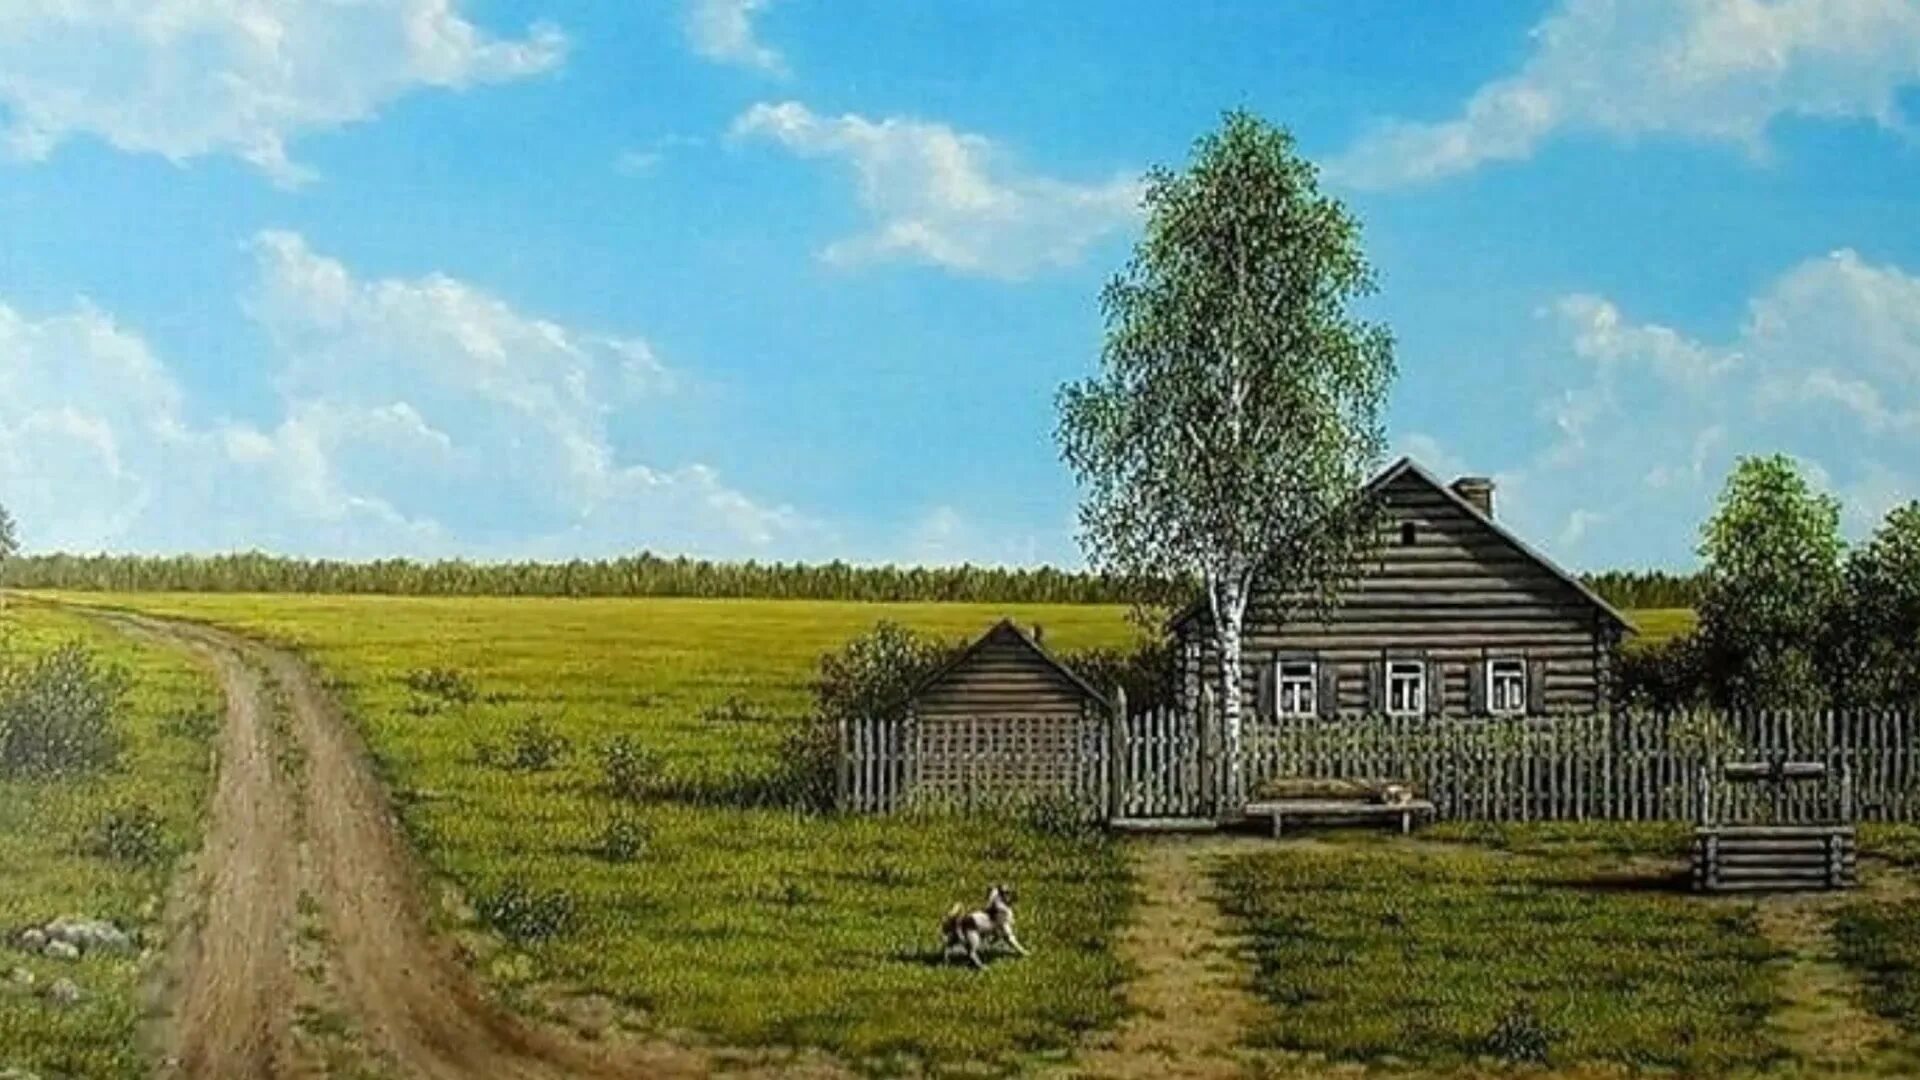 Песня родной дом где там далеко. Деревенская природа. Домик в деревне. Отчий дом. Сельский пейзаж.